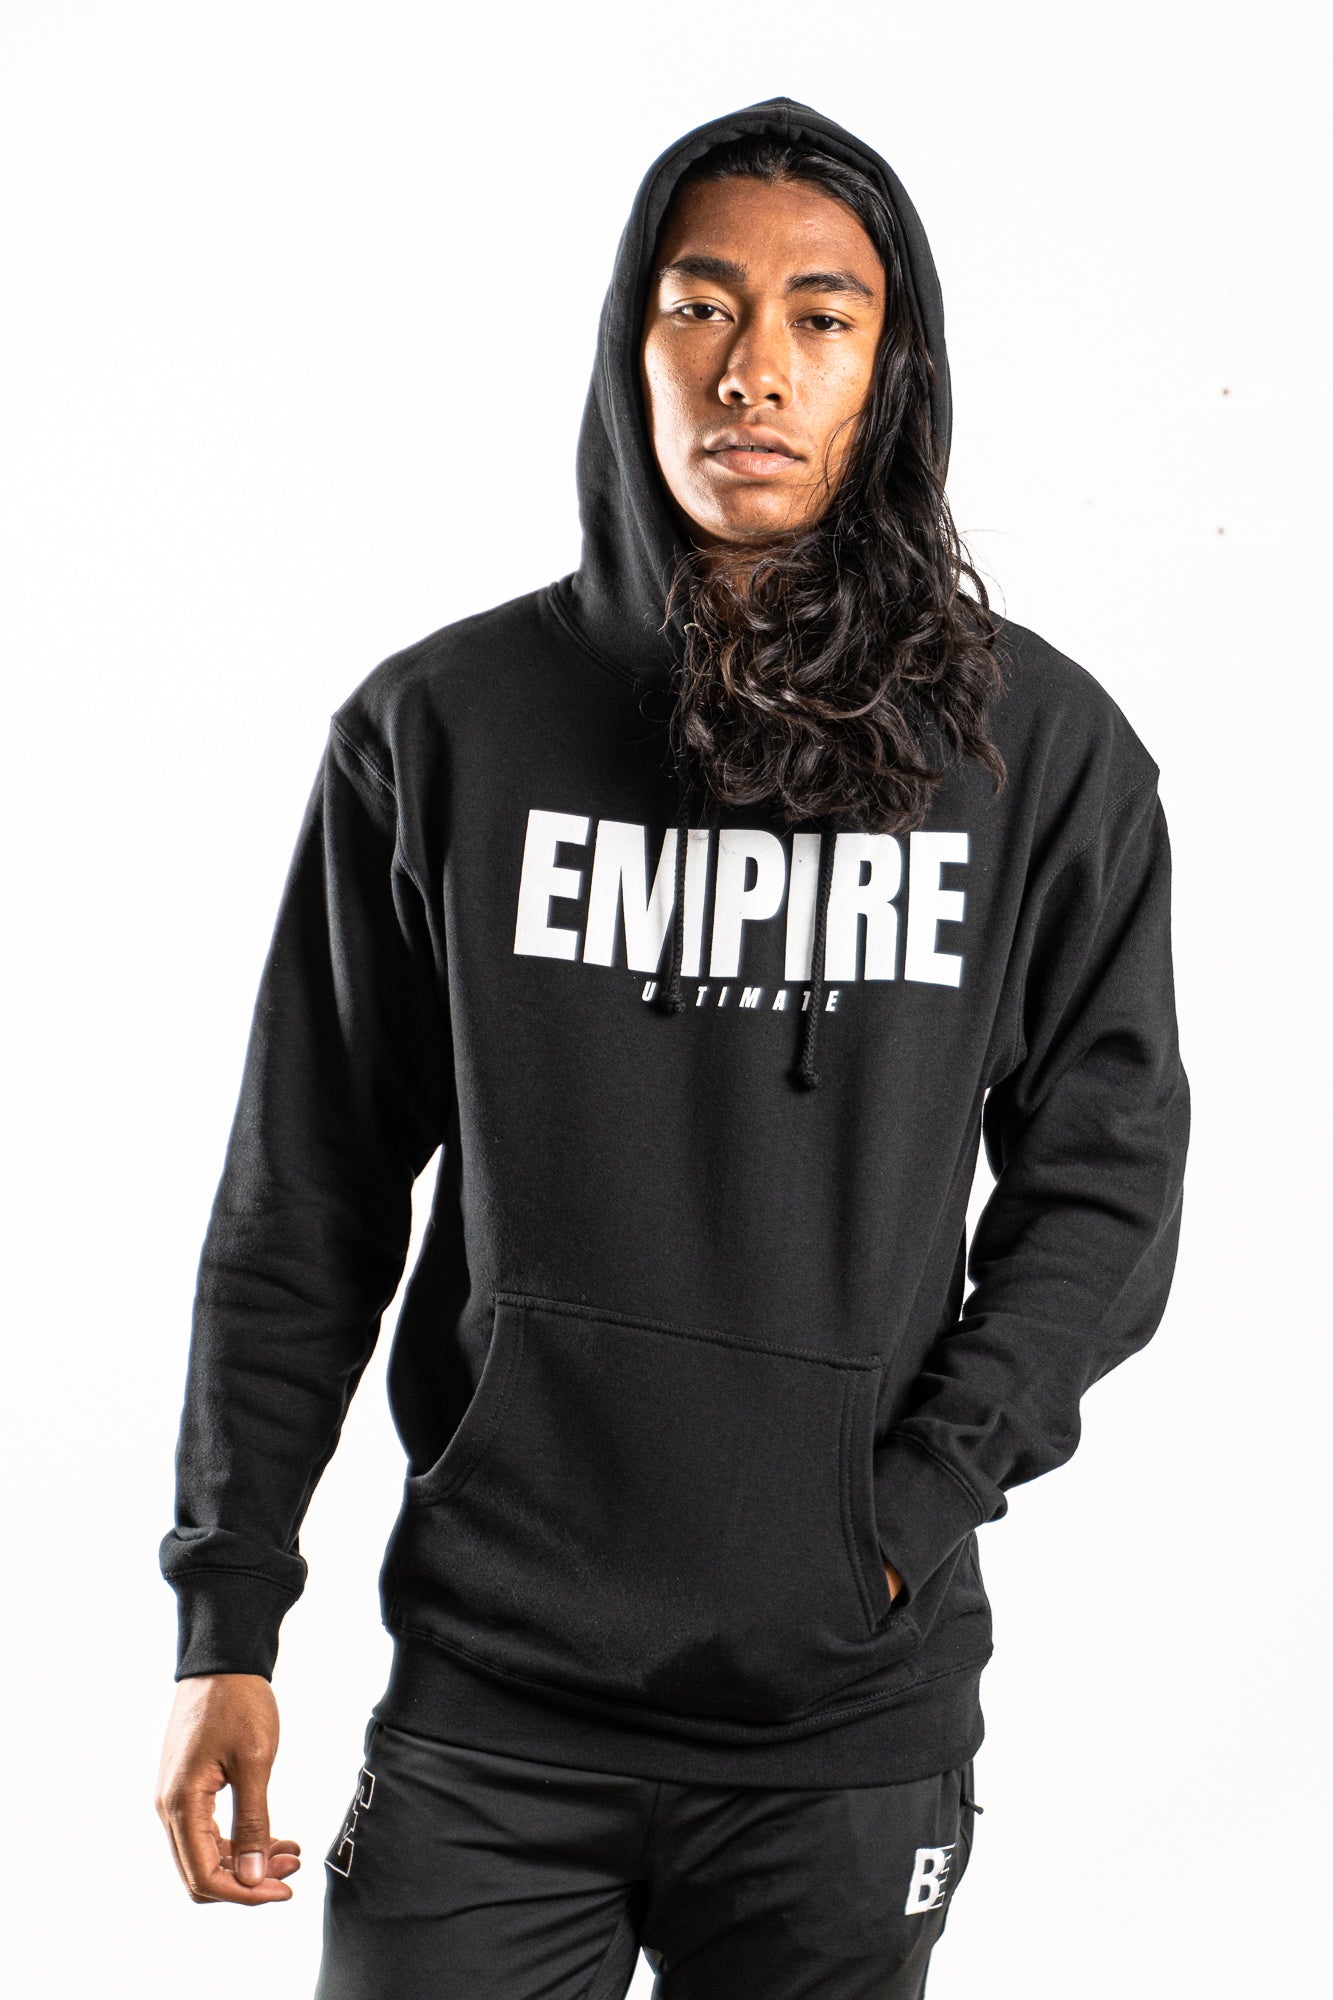 Empire Ultimate Black Hoodie